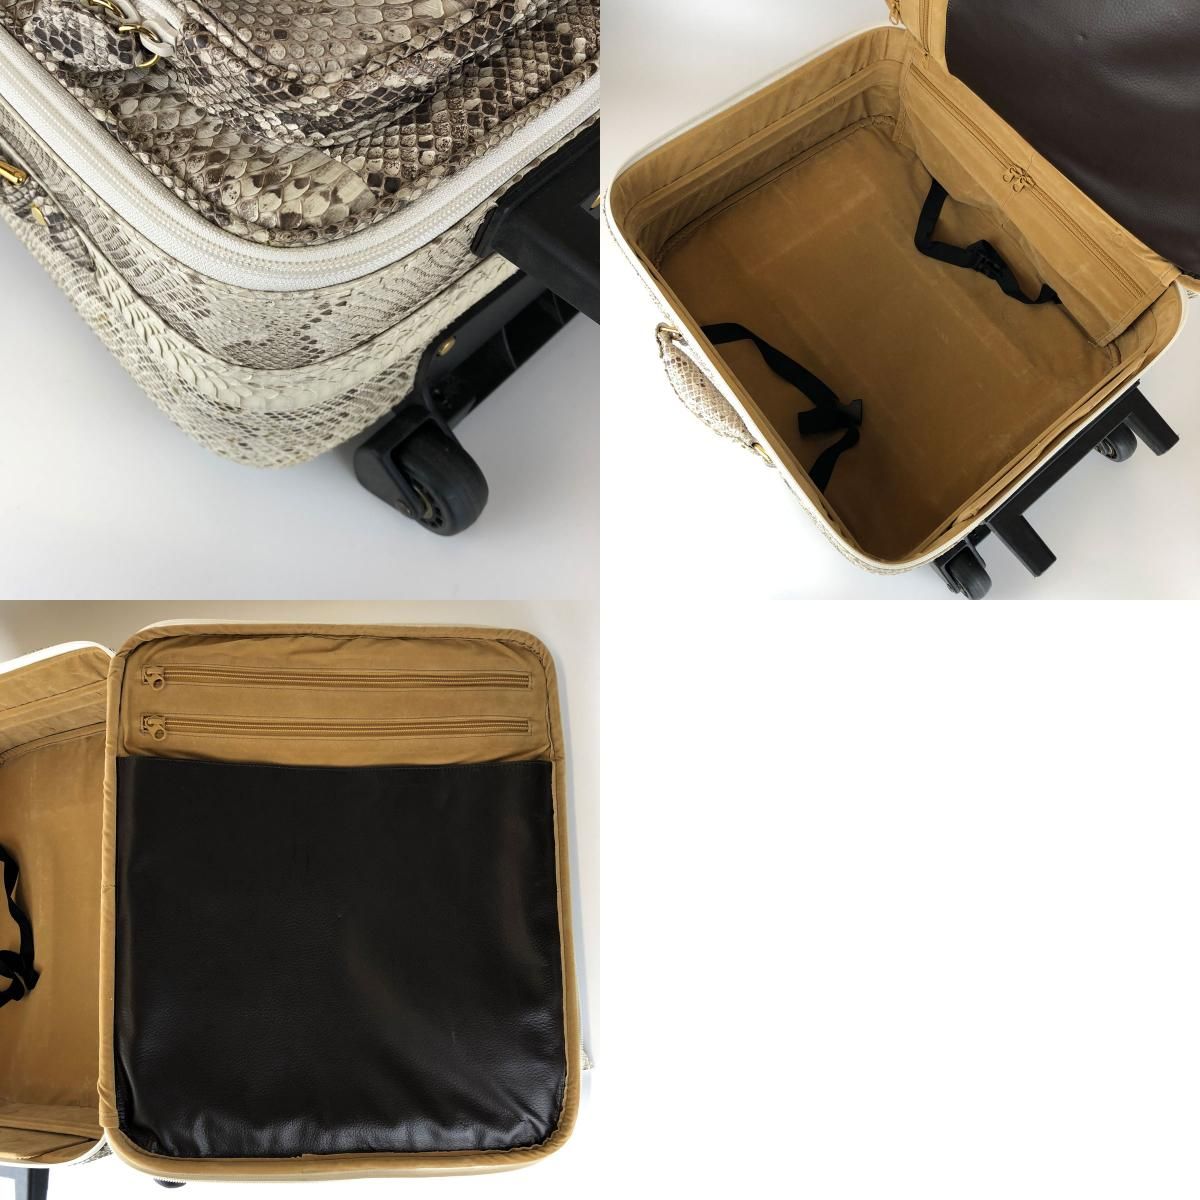 日本製 本革 パイソン スーツケース 約30L キャリーケース キャリーバッグ ホワイト系 リアルレザー 蛇 ヘビ 旅行バッグ 旅行鞄 USED 中古